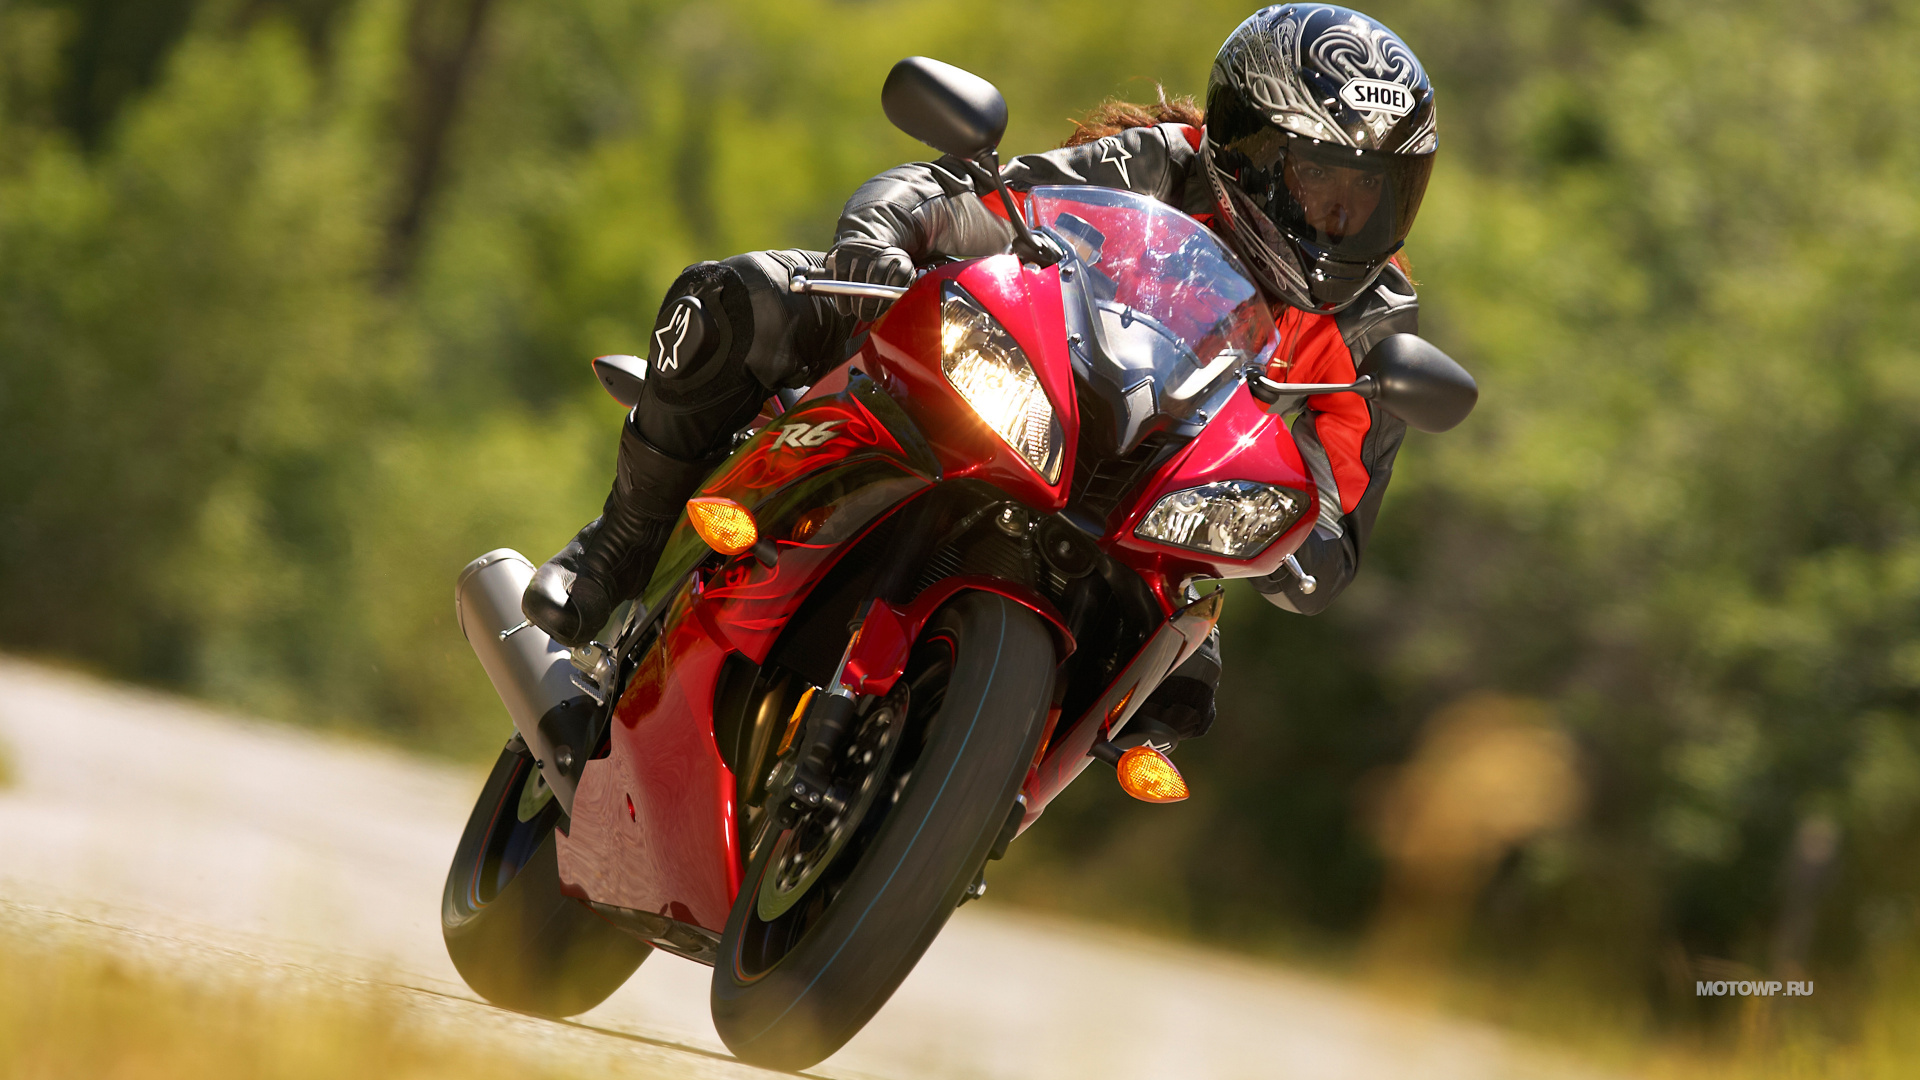 摩托车头盔, 超级赛车, 滑胎, 摩托车赛车, 骑摩托车特技 壁纸 1920x1080 允许